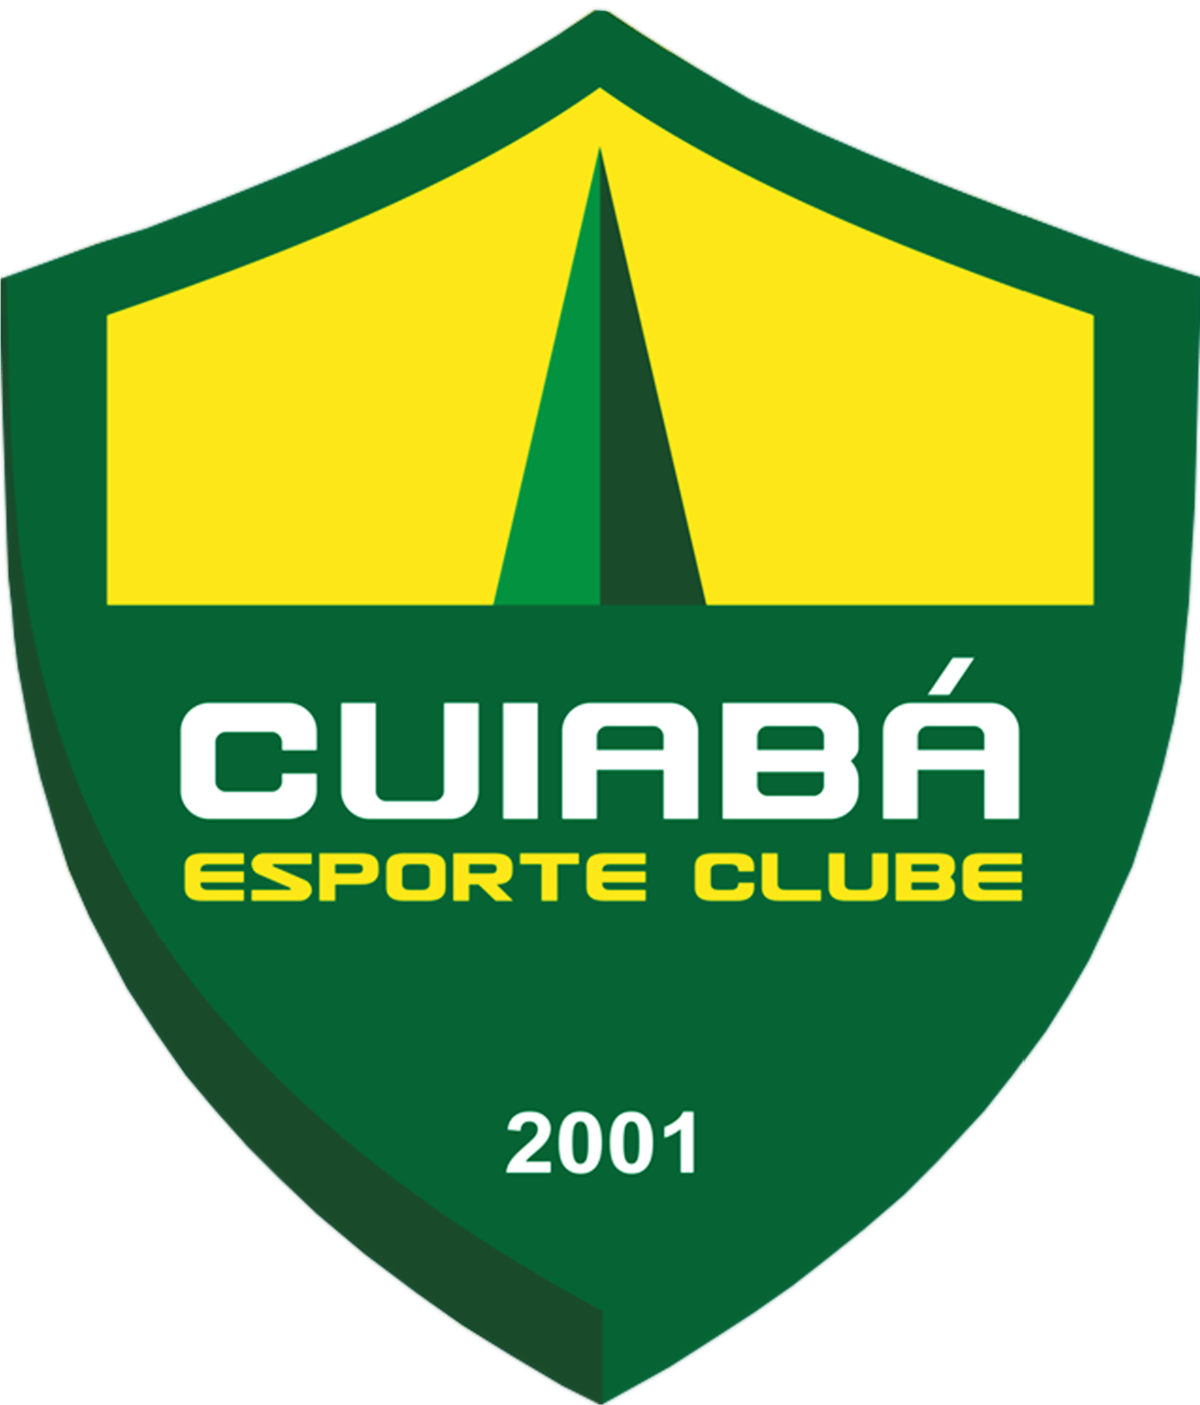 Cuiabá vs Santos: Bet on the home team